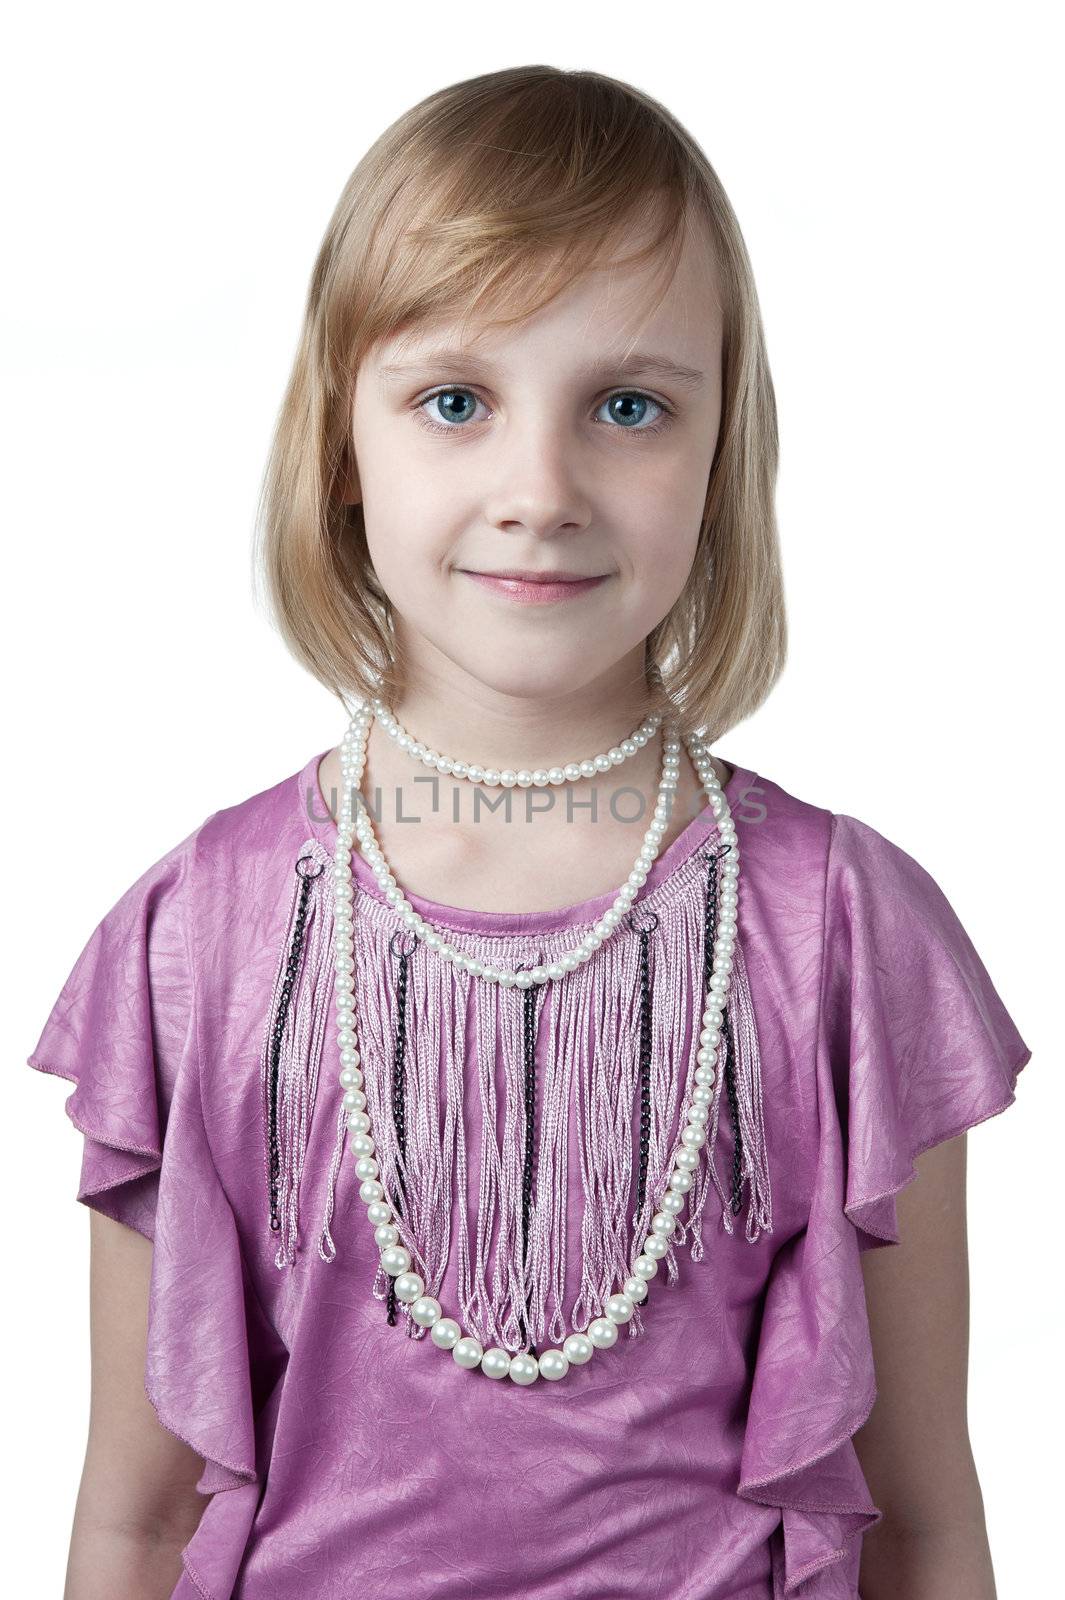 little princess in purple dress by zybr78